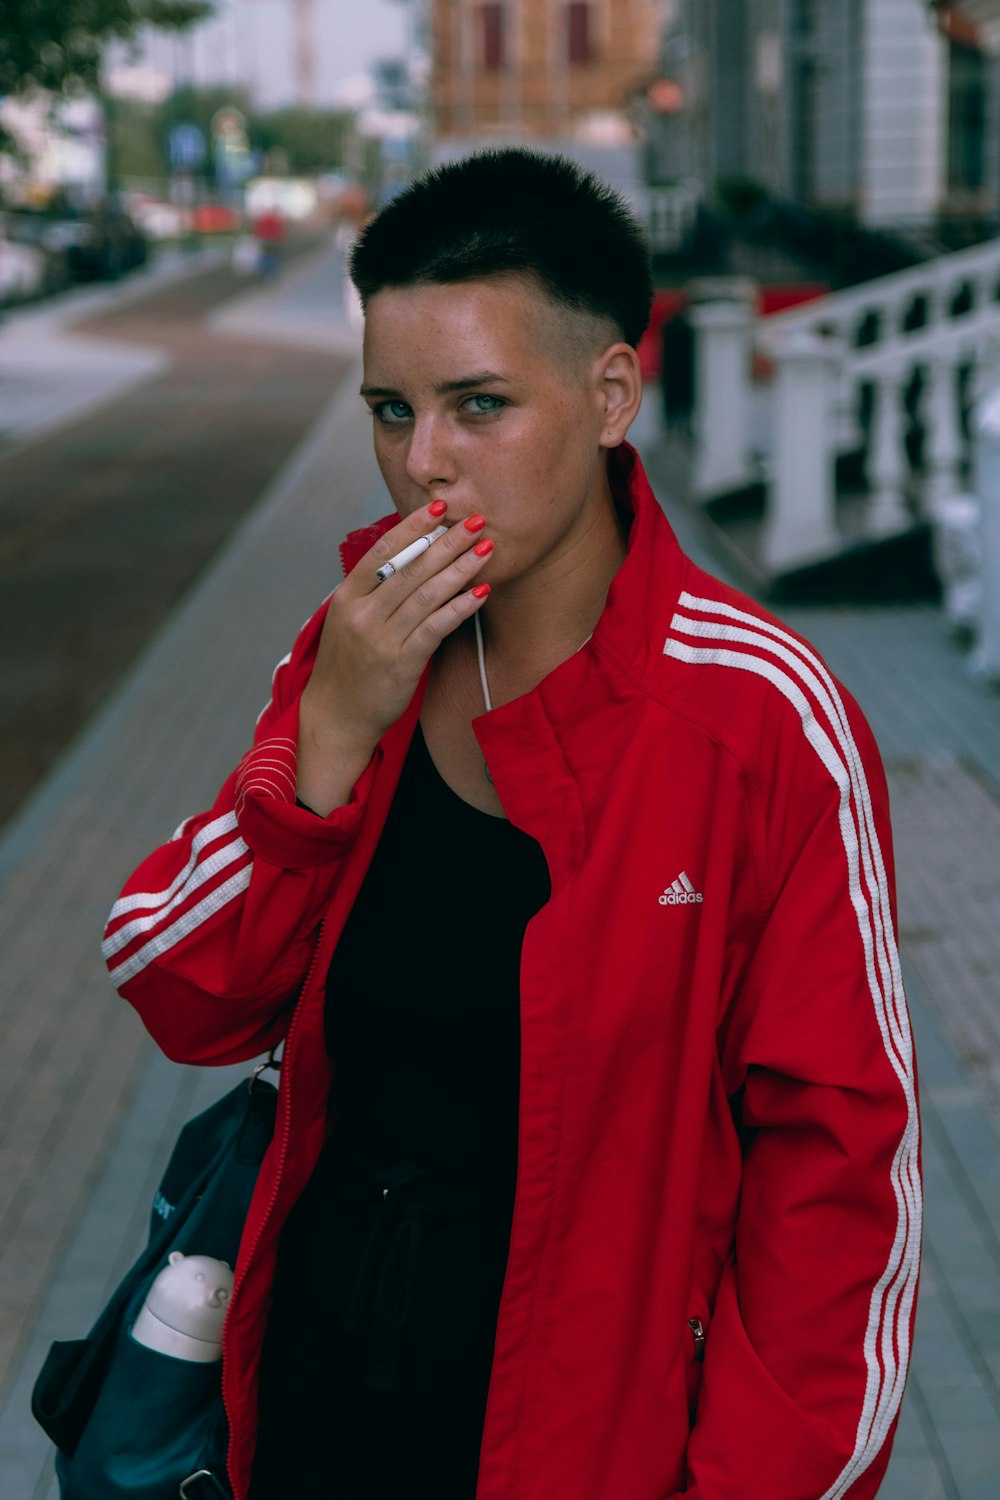 Man red and white adidas zip jacket photo – Free Smoking Image Unsplash